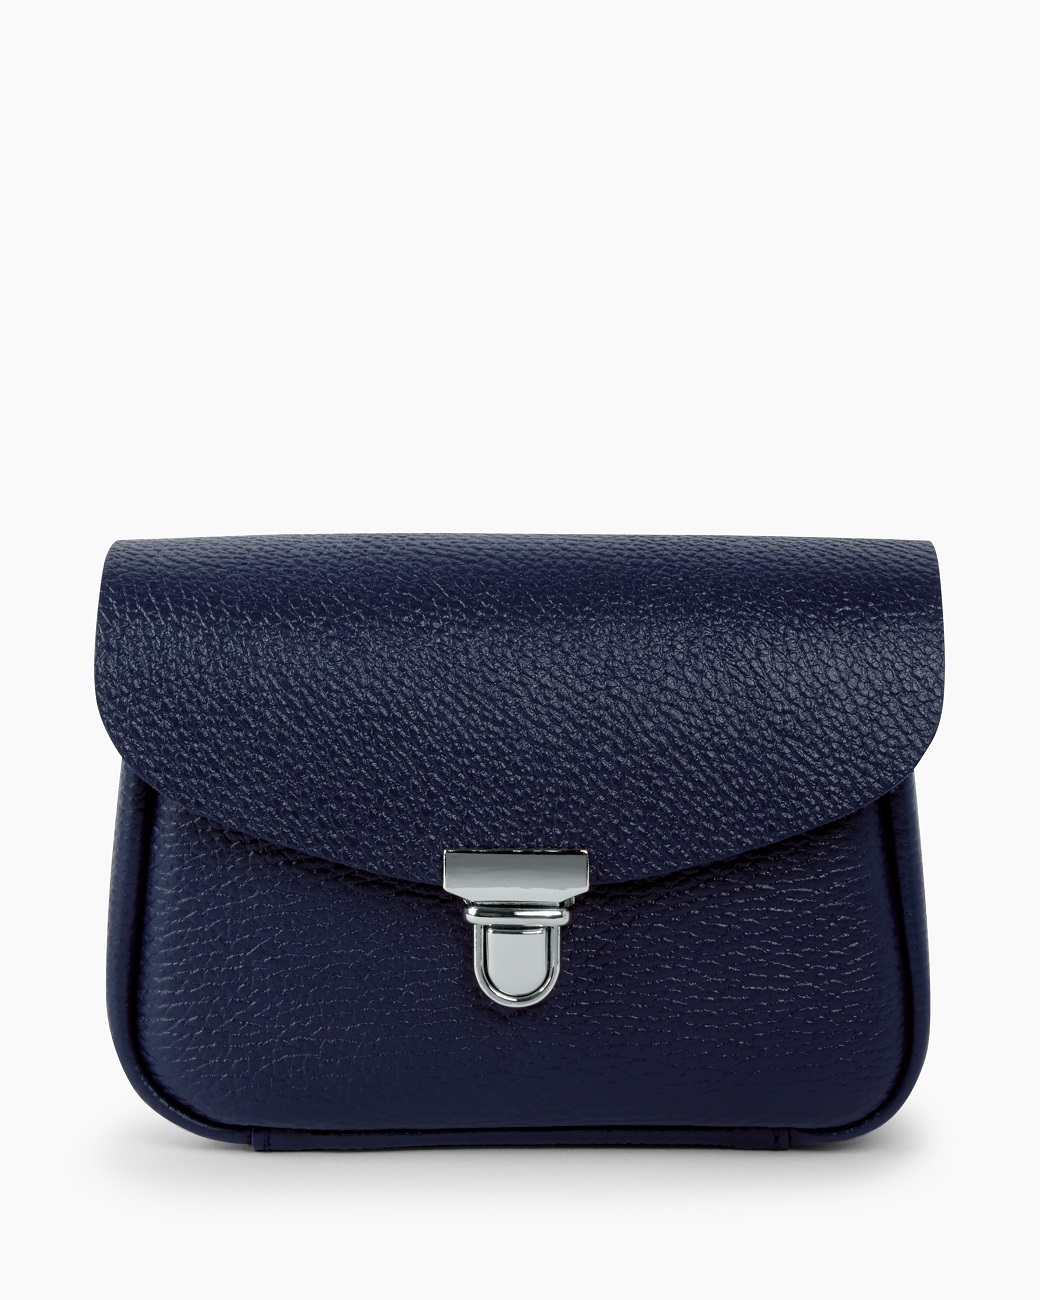 Женская поясная сумка из натуральной кожи синяя A001 sapphire mini grain